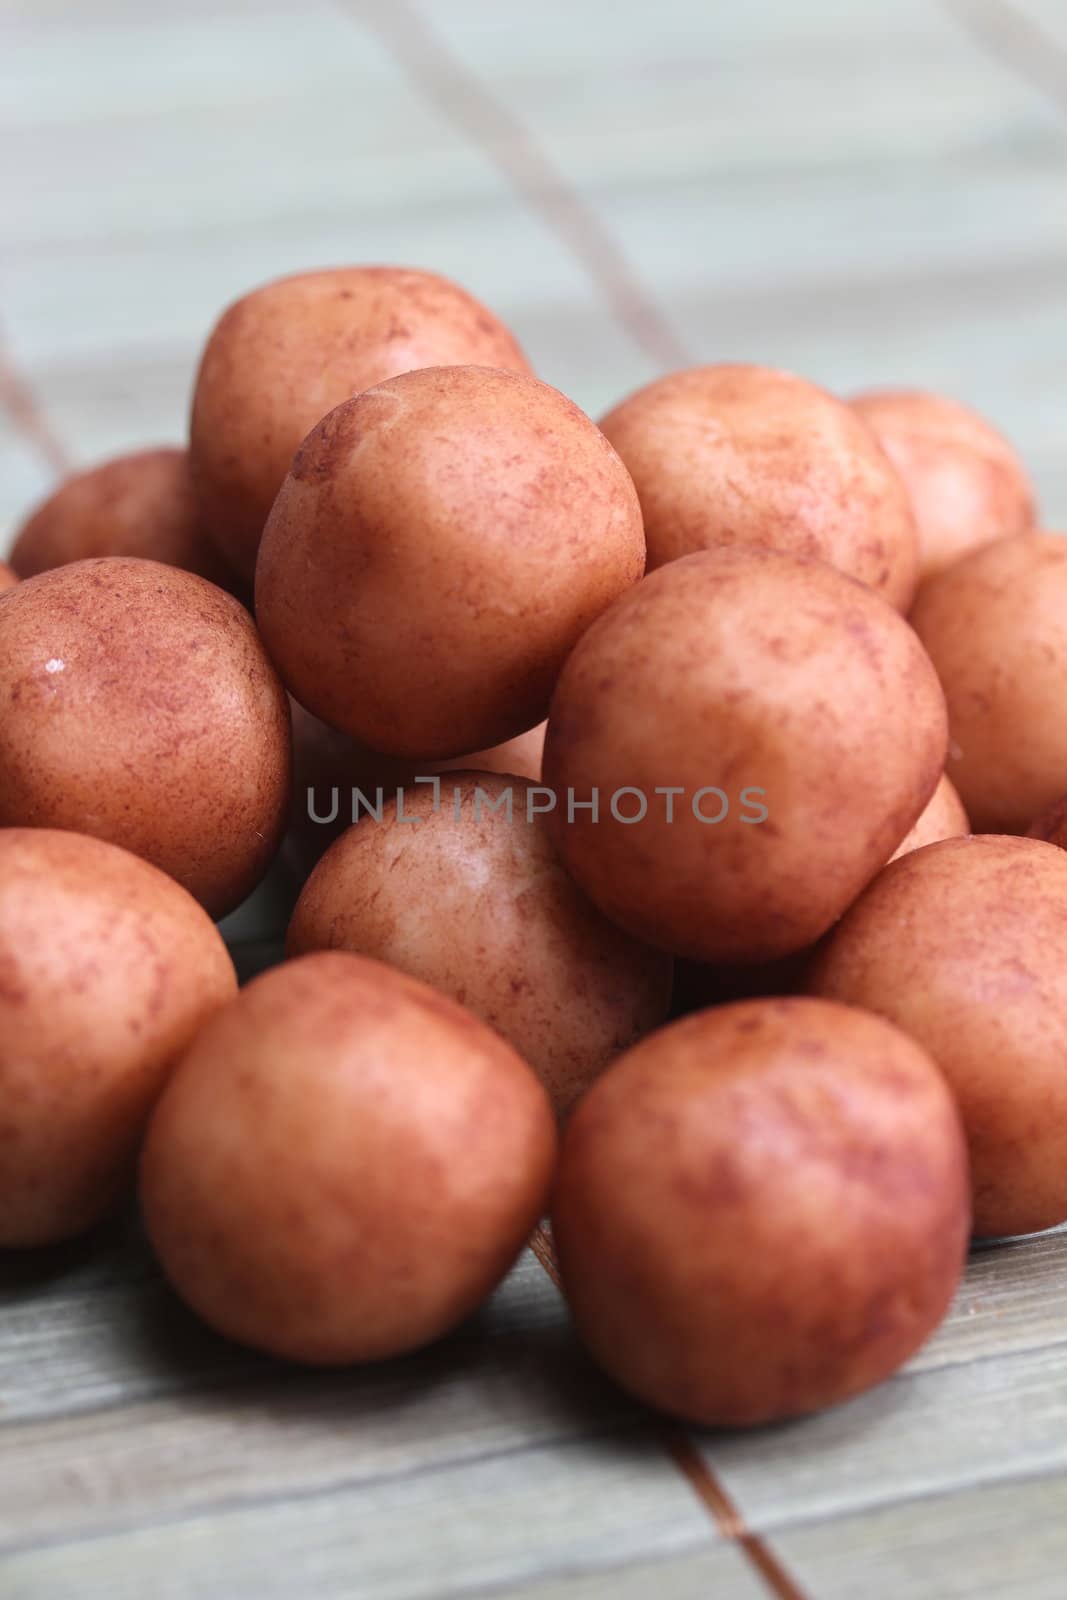 marzipan potatoes by Teka77